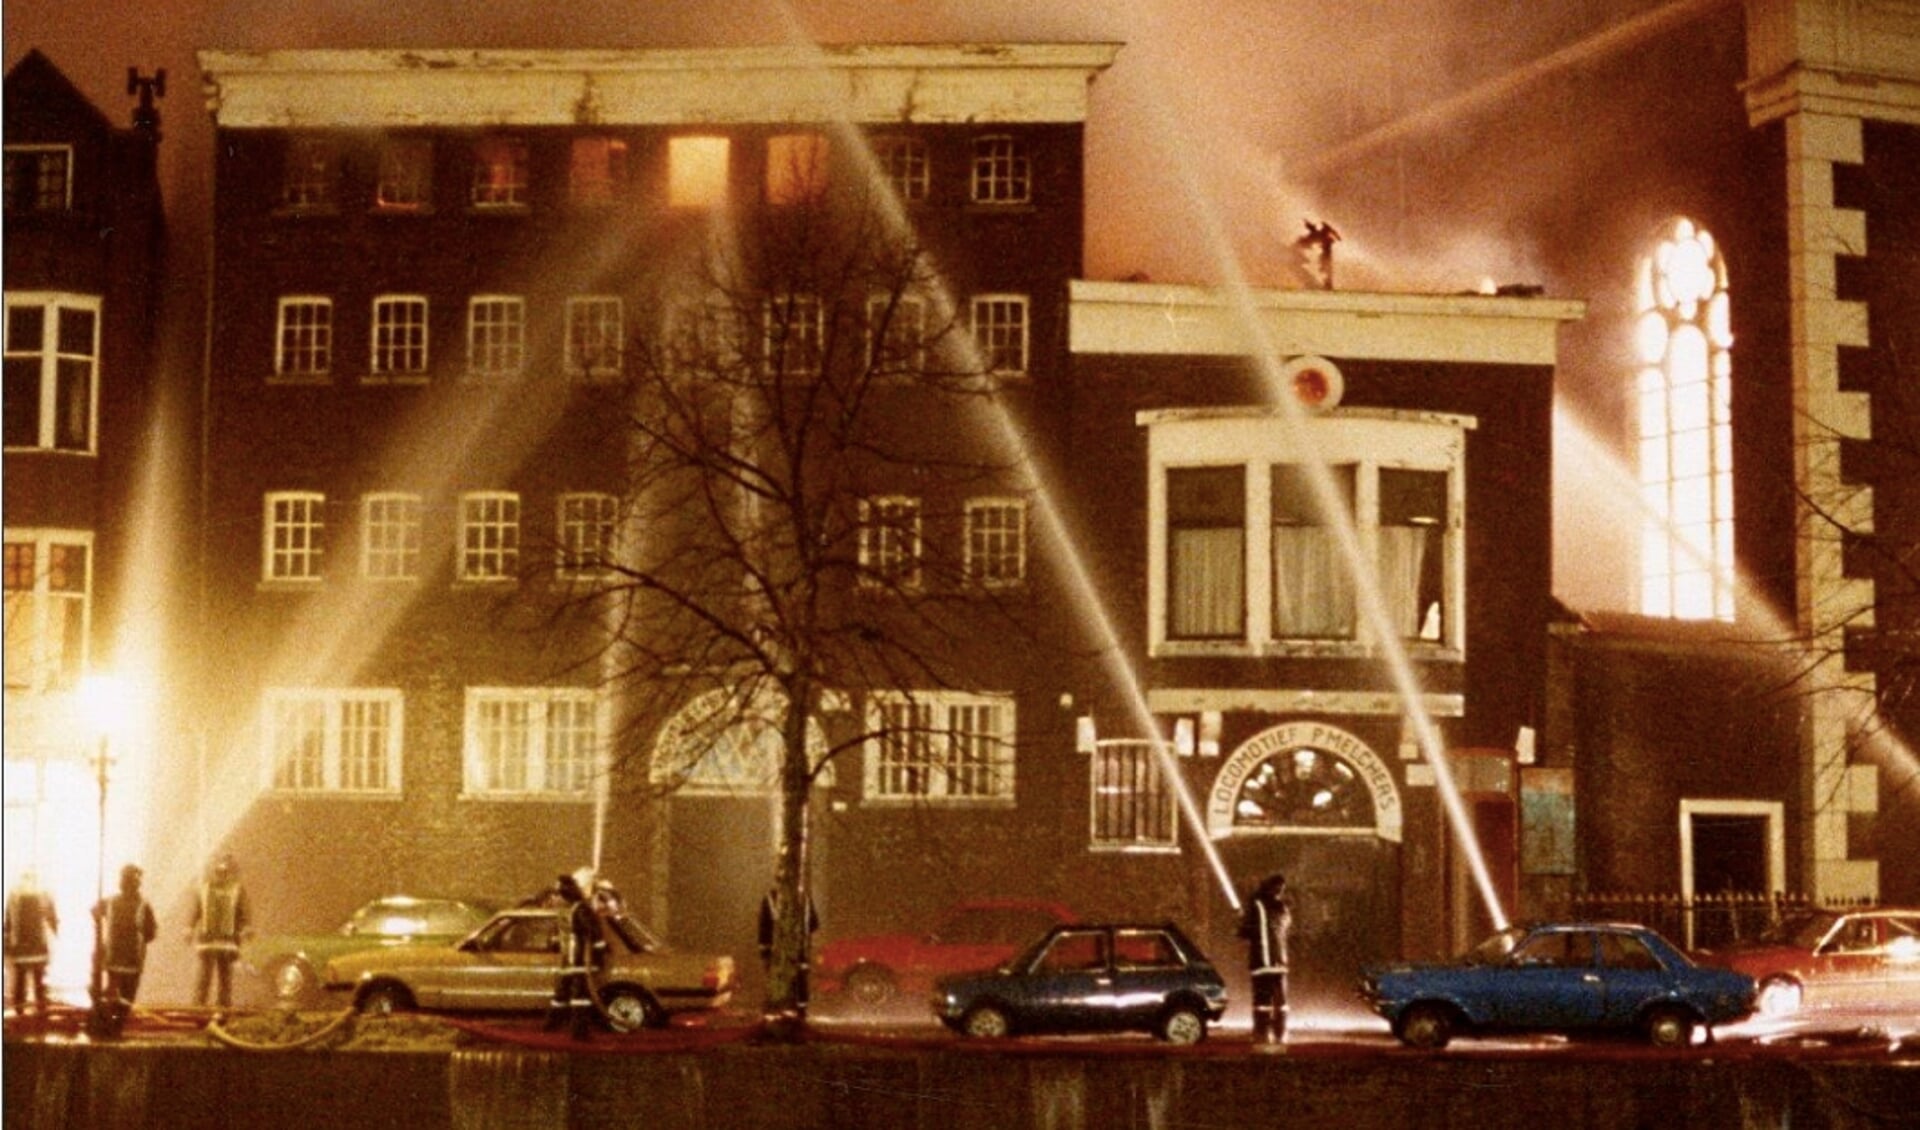 Brand in de Locomotief - thans het Jenevermuseum - in 1985.